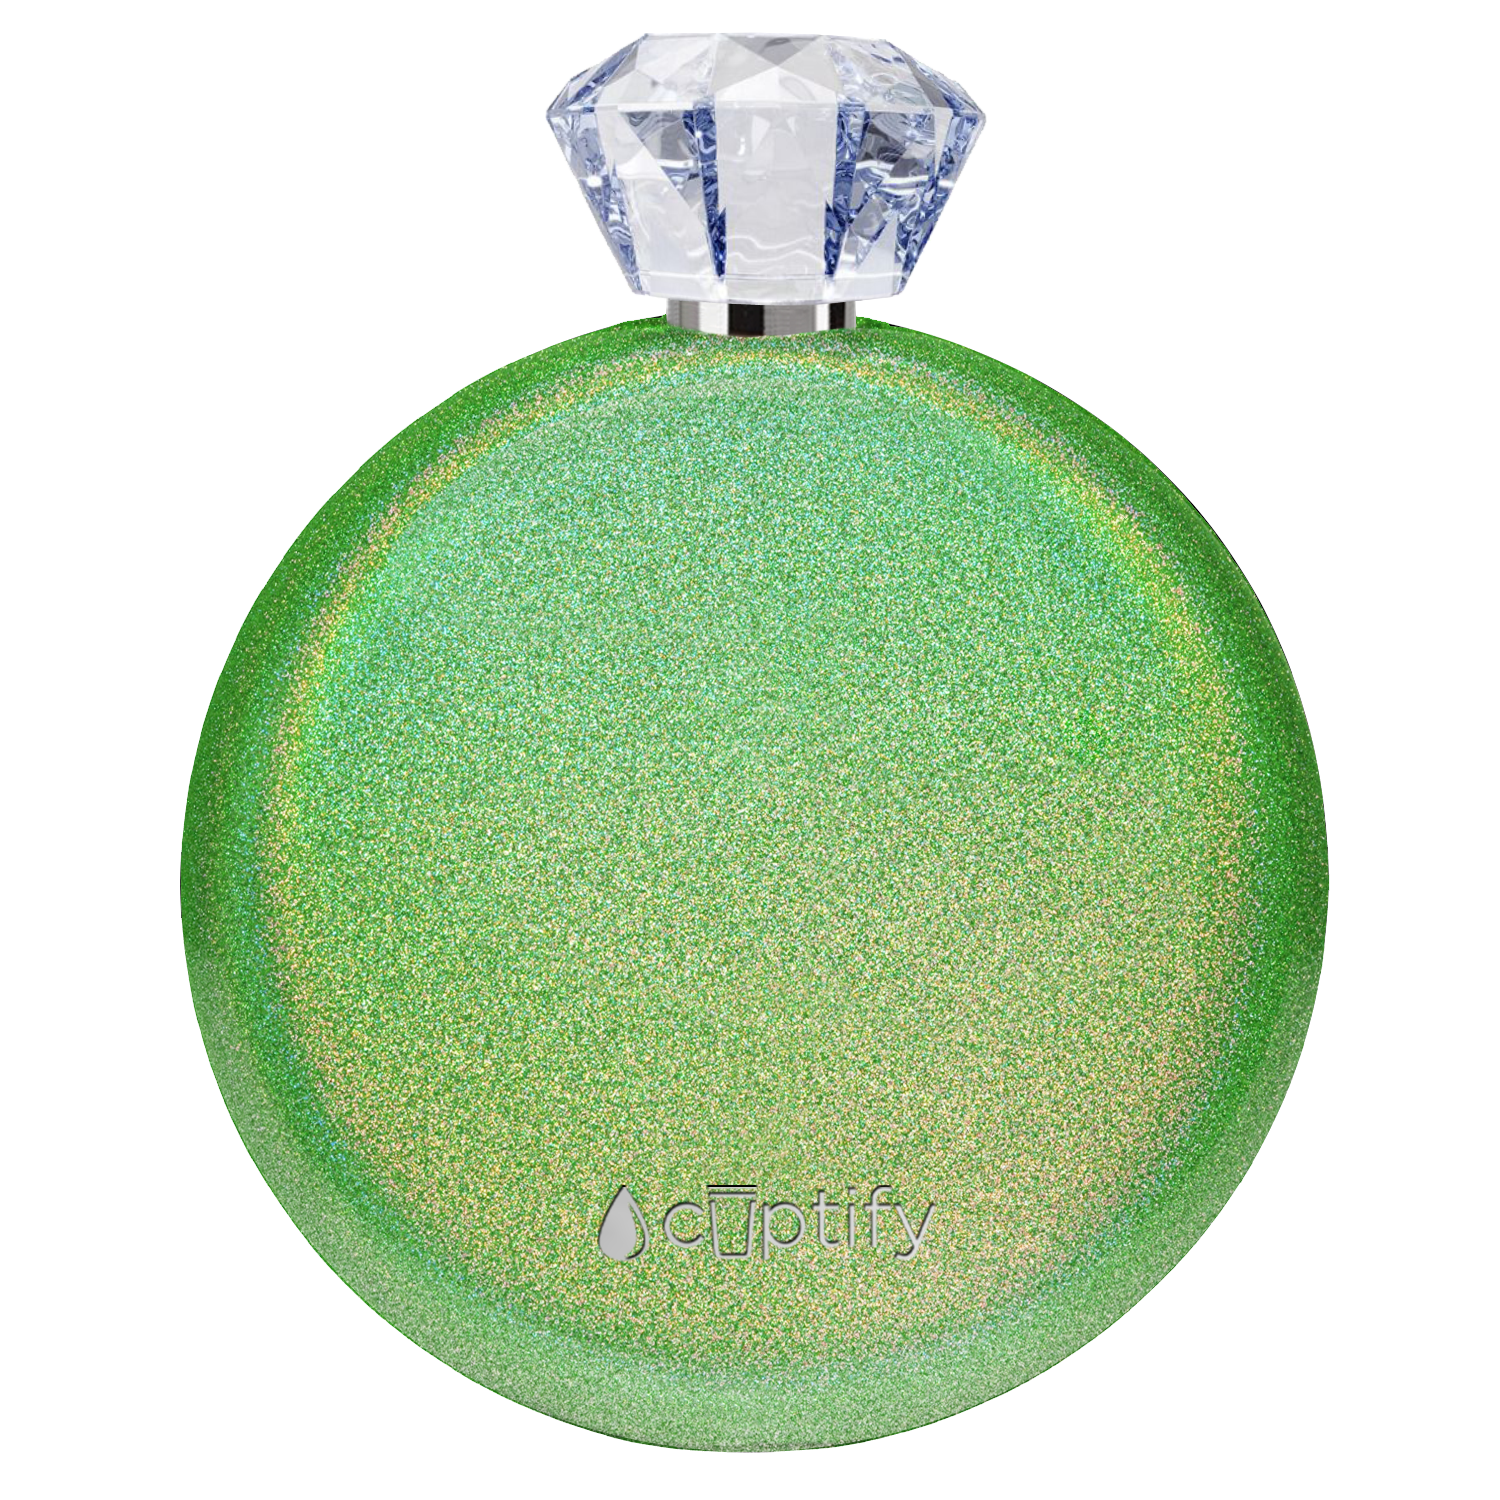 Emerald Green Glitter 5oz Jewel Liquor Flask